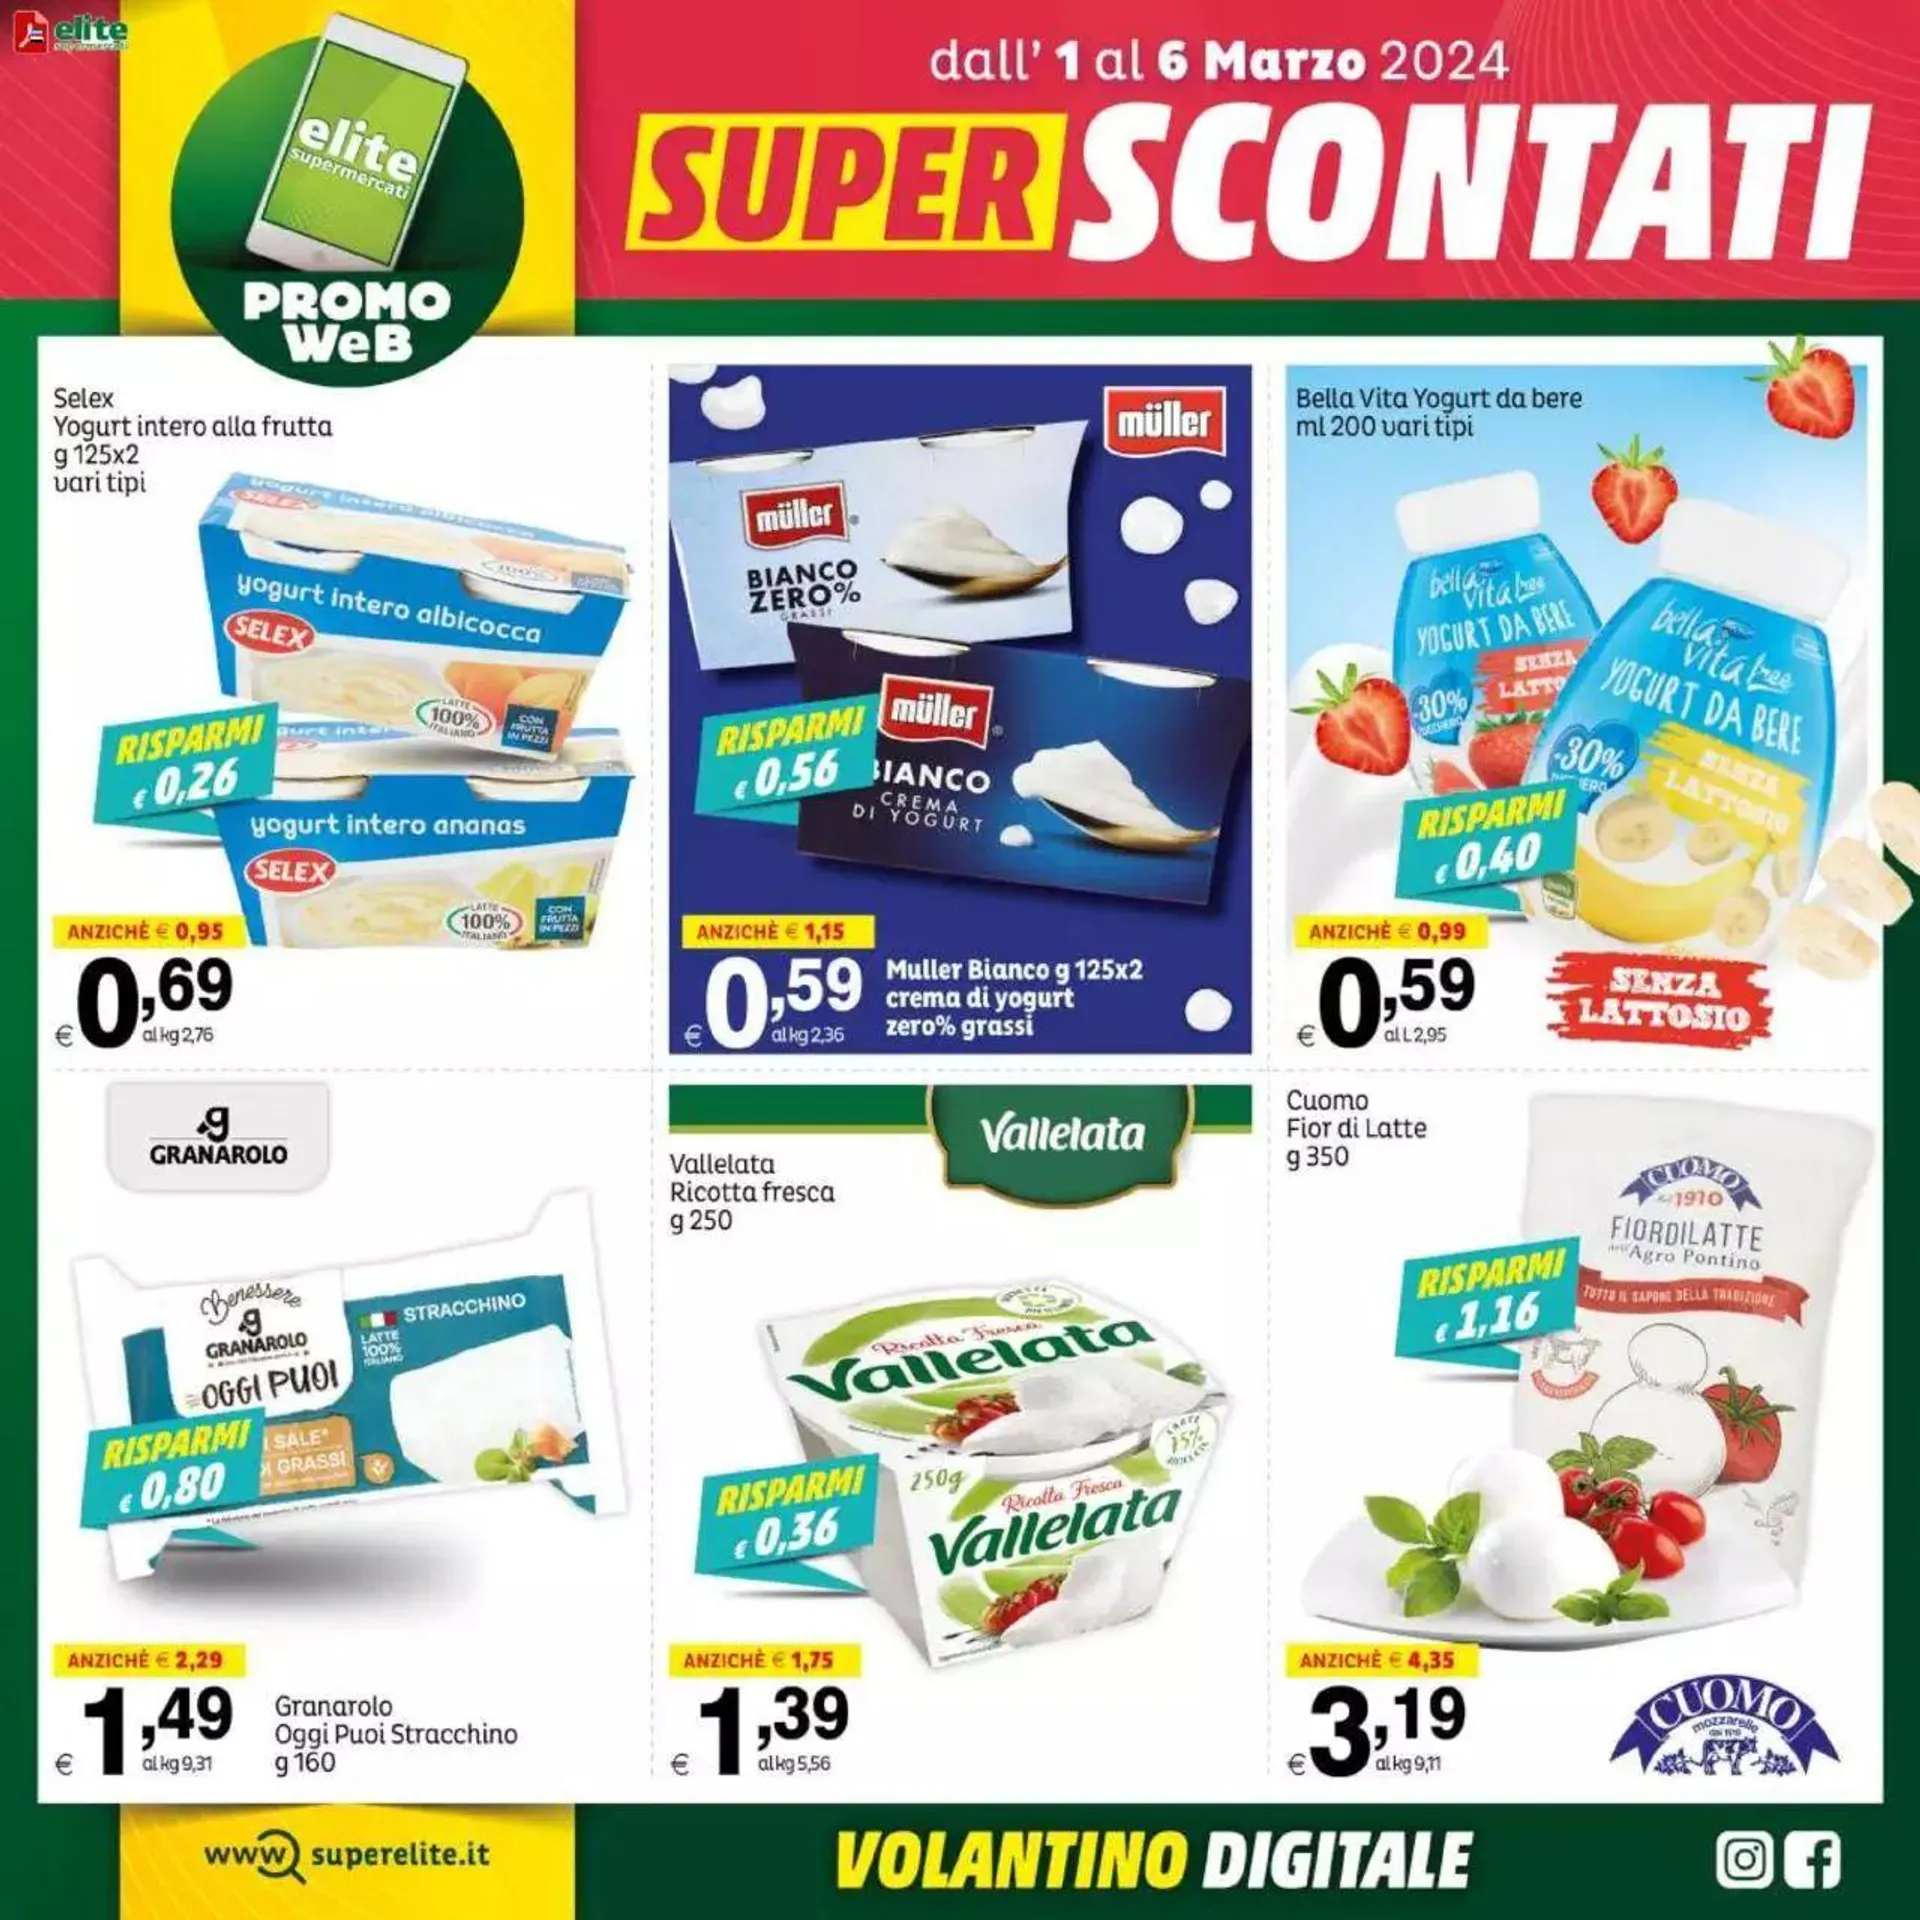 Elite Supermercati - Super Scontati da 1 marzo a 6 marzo di 2024 - Pagina del volantino 2